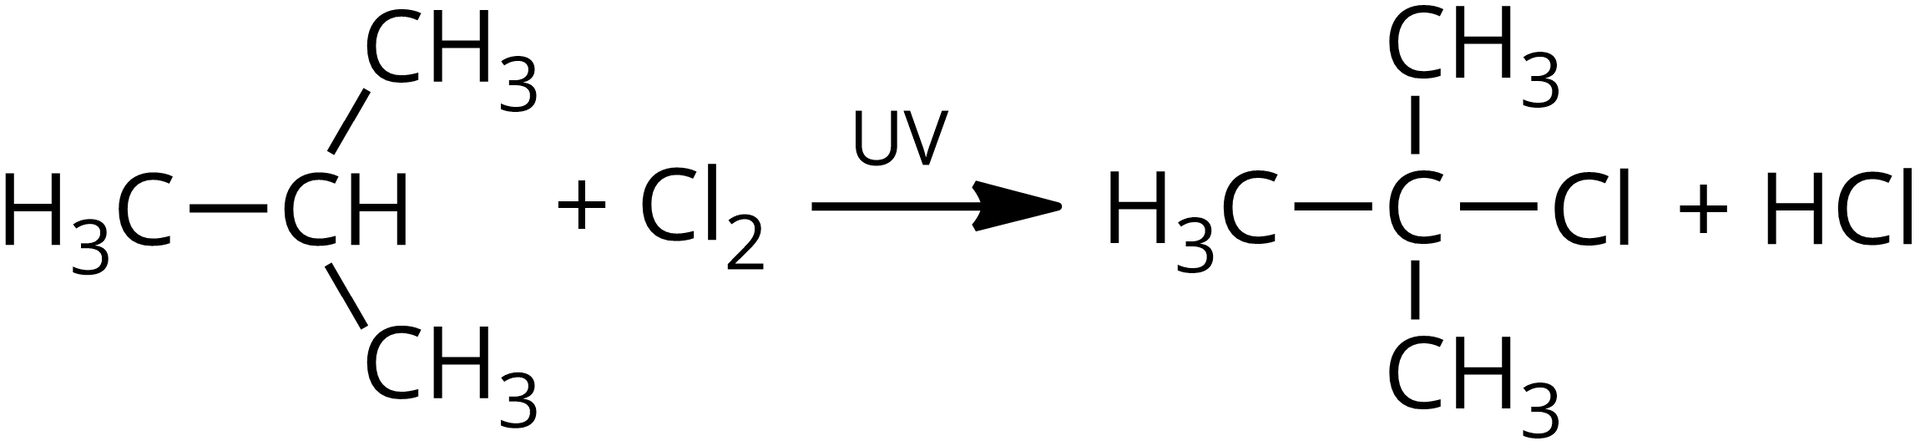 Ilustracja przedstawia równanie alkanu z chlorem w obecności światła UV. Alkan: do atomu węgla przyłączone są trzy grupy metylowe i atom wodoru, dodać chlor, strzałka w prawo, nad strzałką zapis: UV, powstaje halogenopochodna, w której do atomu węgla przyłączone są trzy grupy metylowe oraz atom chloru. Drugim produktem jest cząsteczka HCl.